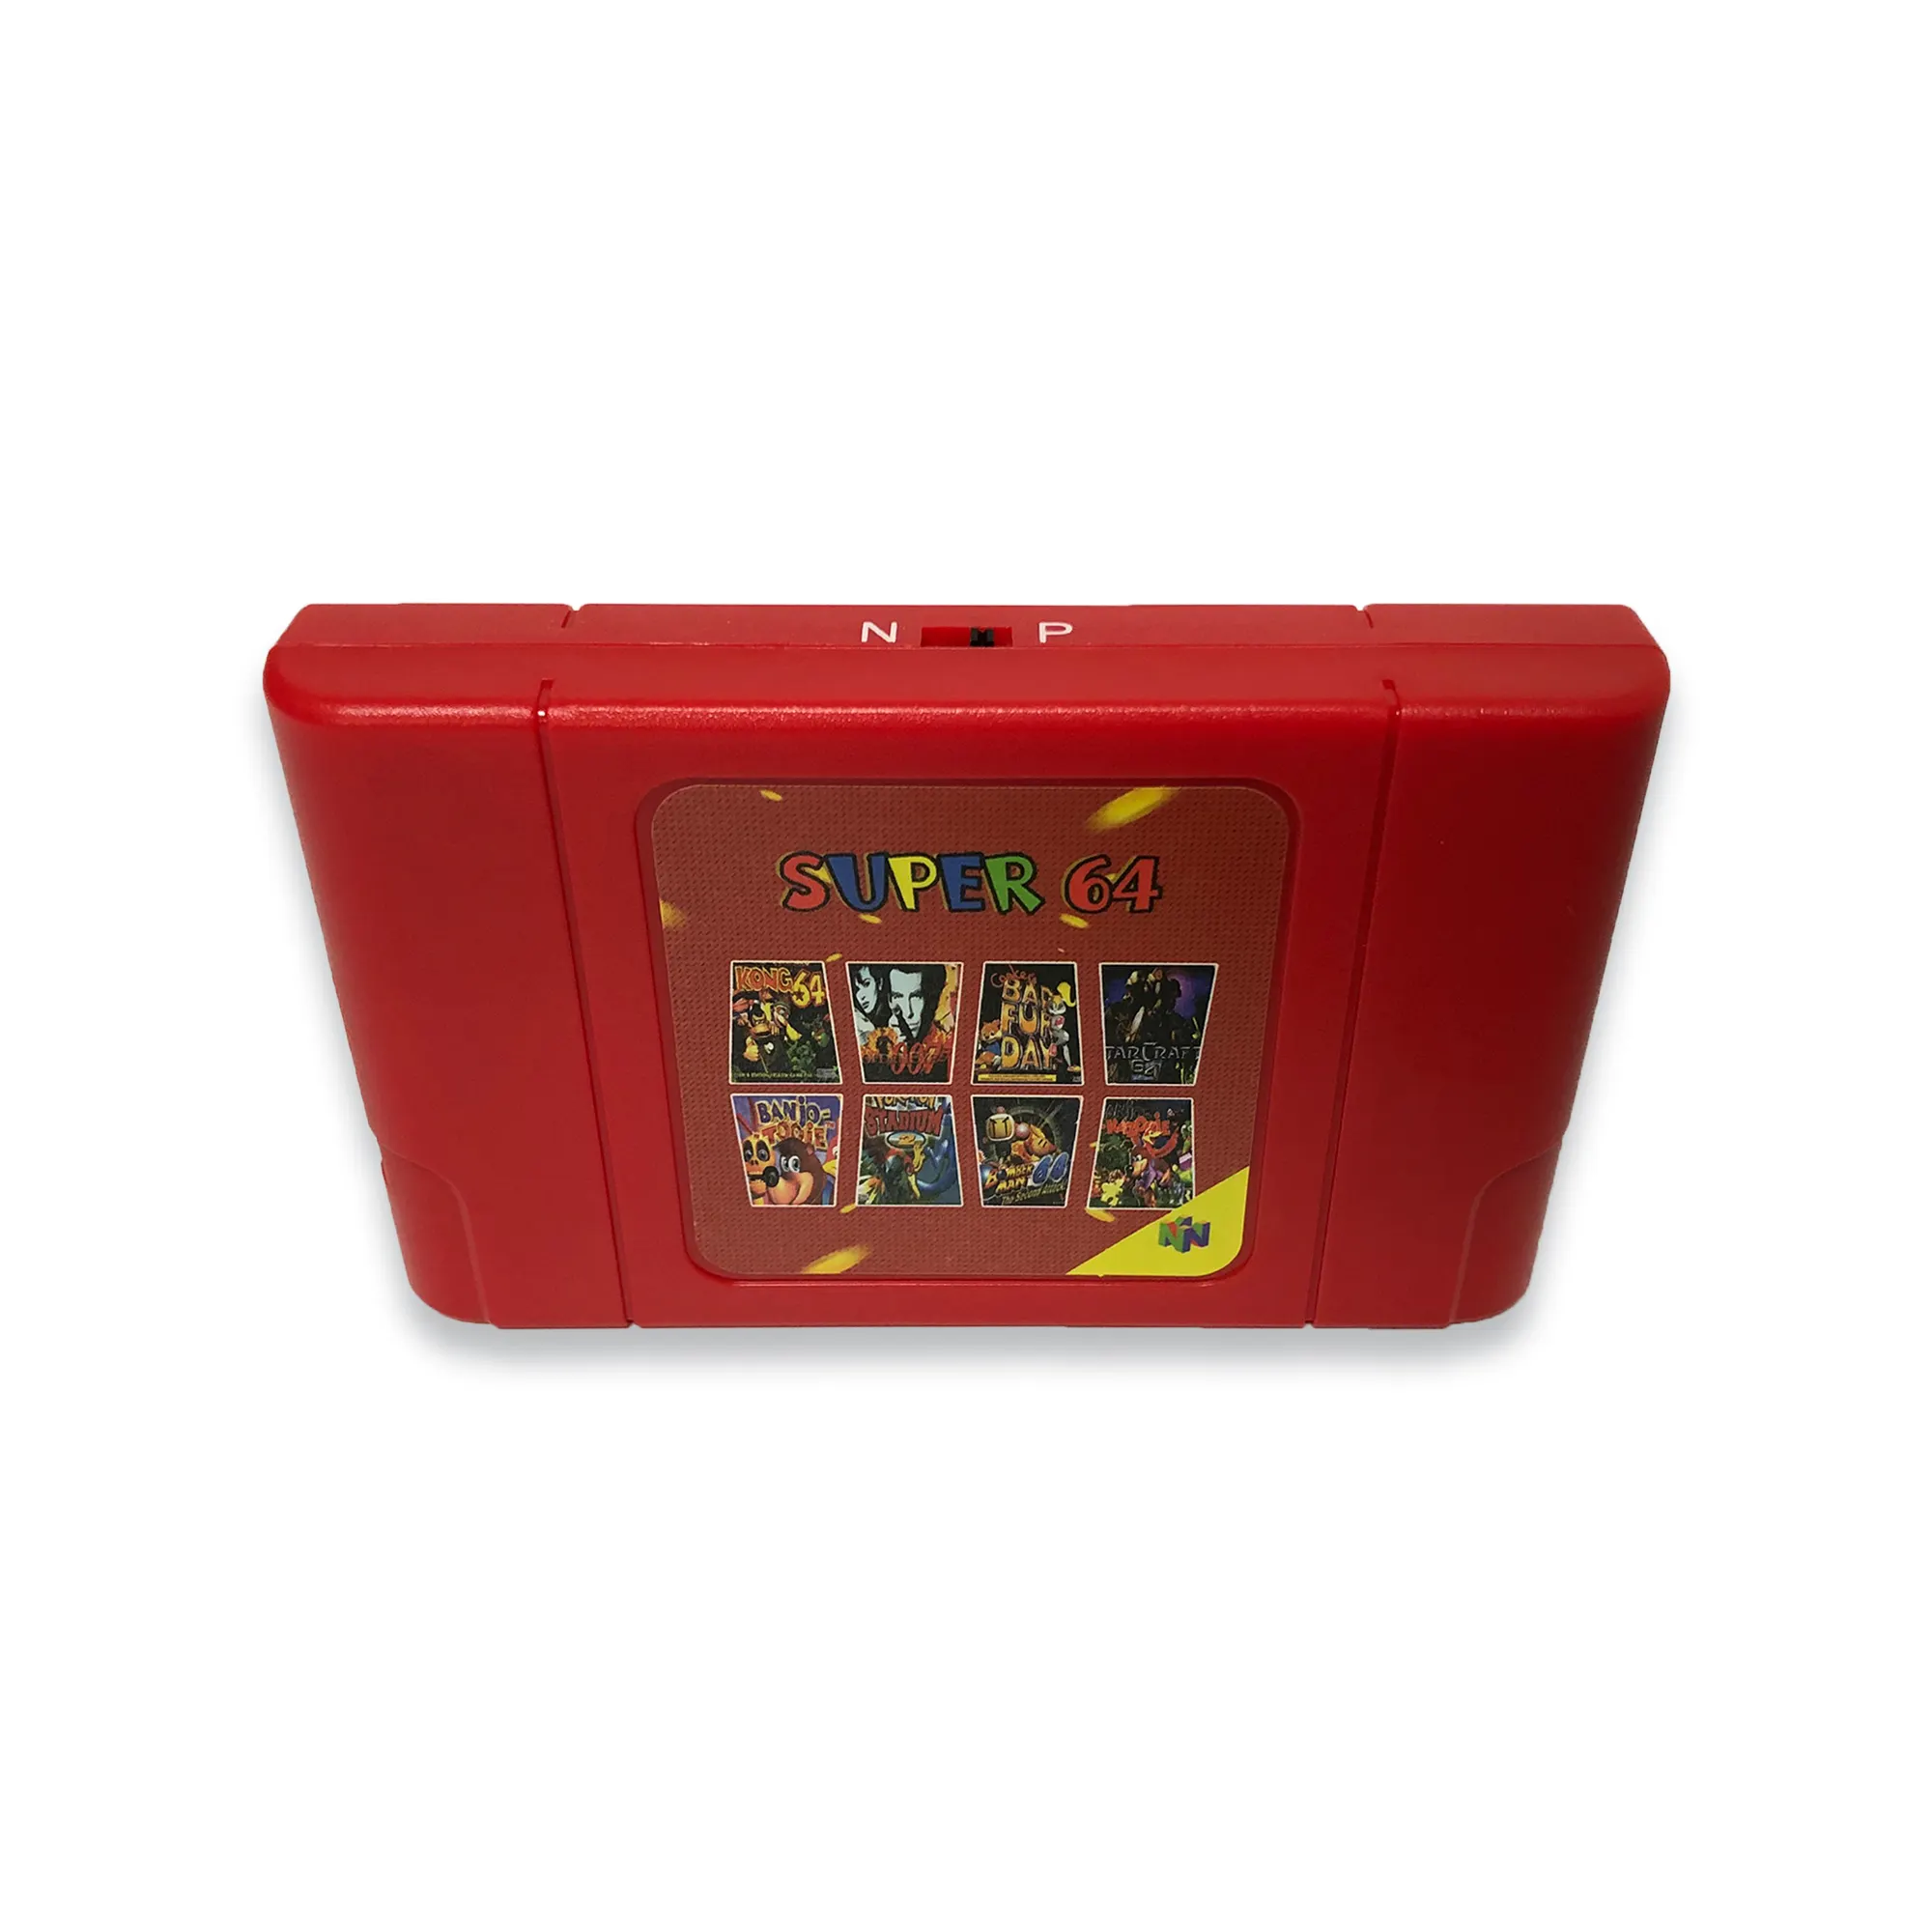 340 в 1 игровой картридж Super 64 для игровой консоли N64 с поддержкой NTSC & PAL системы Super Mario 64 Party 1 2 3 Zelda Quest